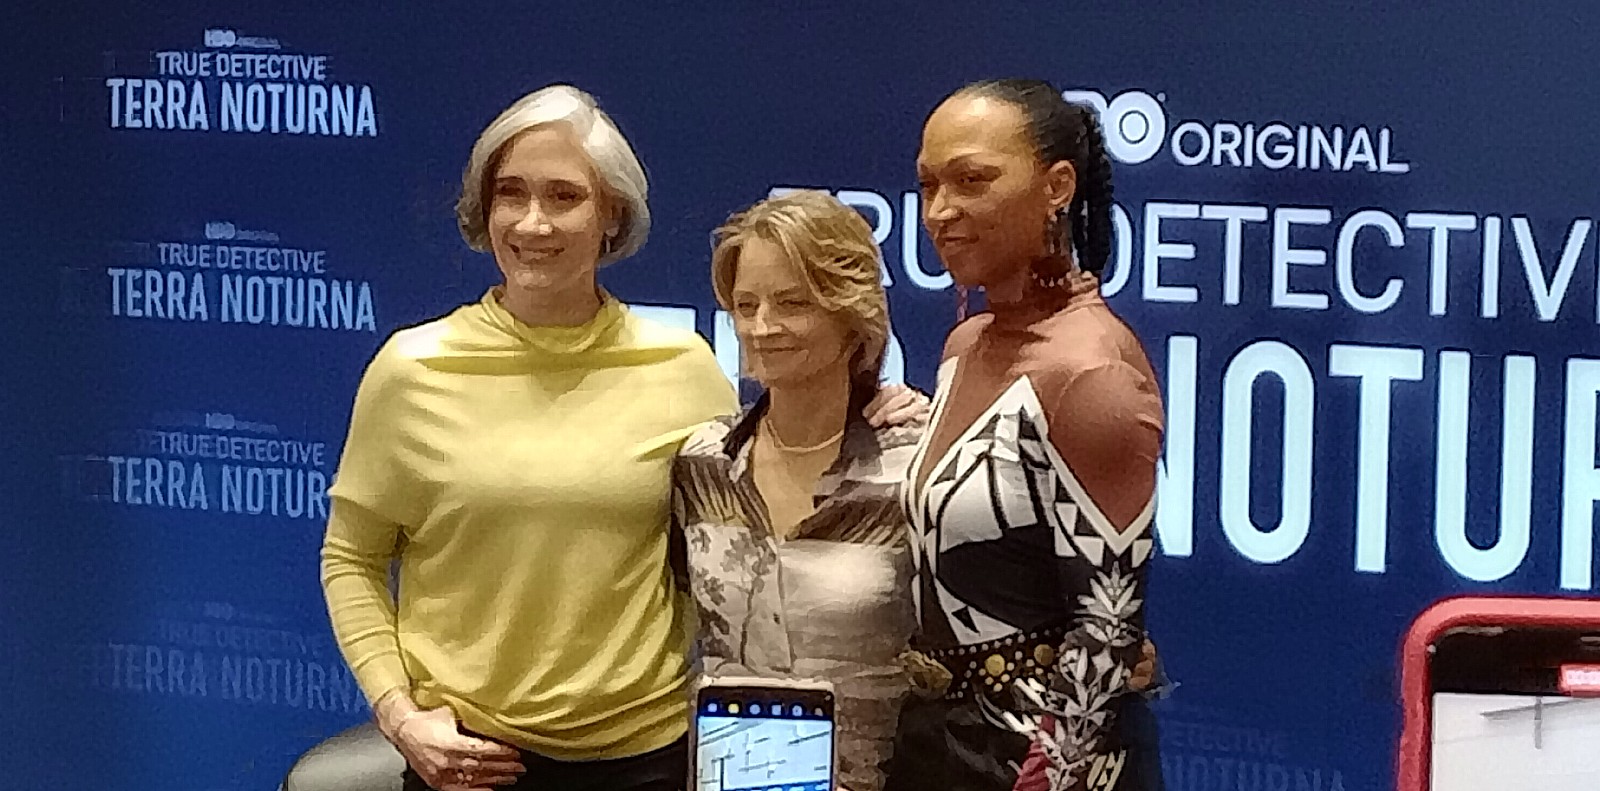 Imagem das atrizes Jodie Foster e Kali Reis, junto da diretora Issa López, divulgando a série True Detective: Terra Noturna